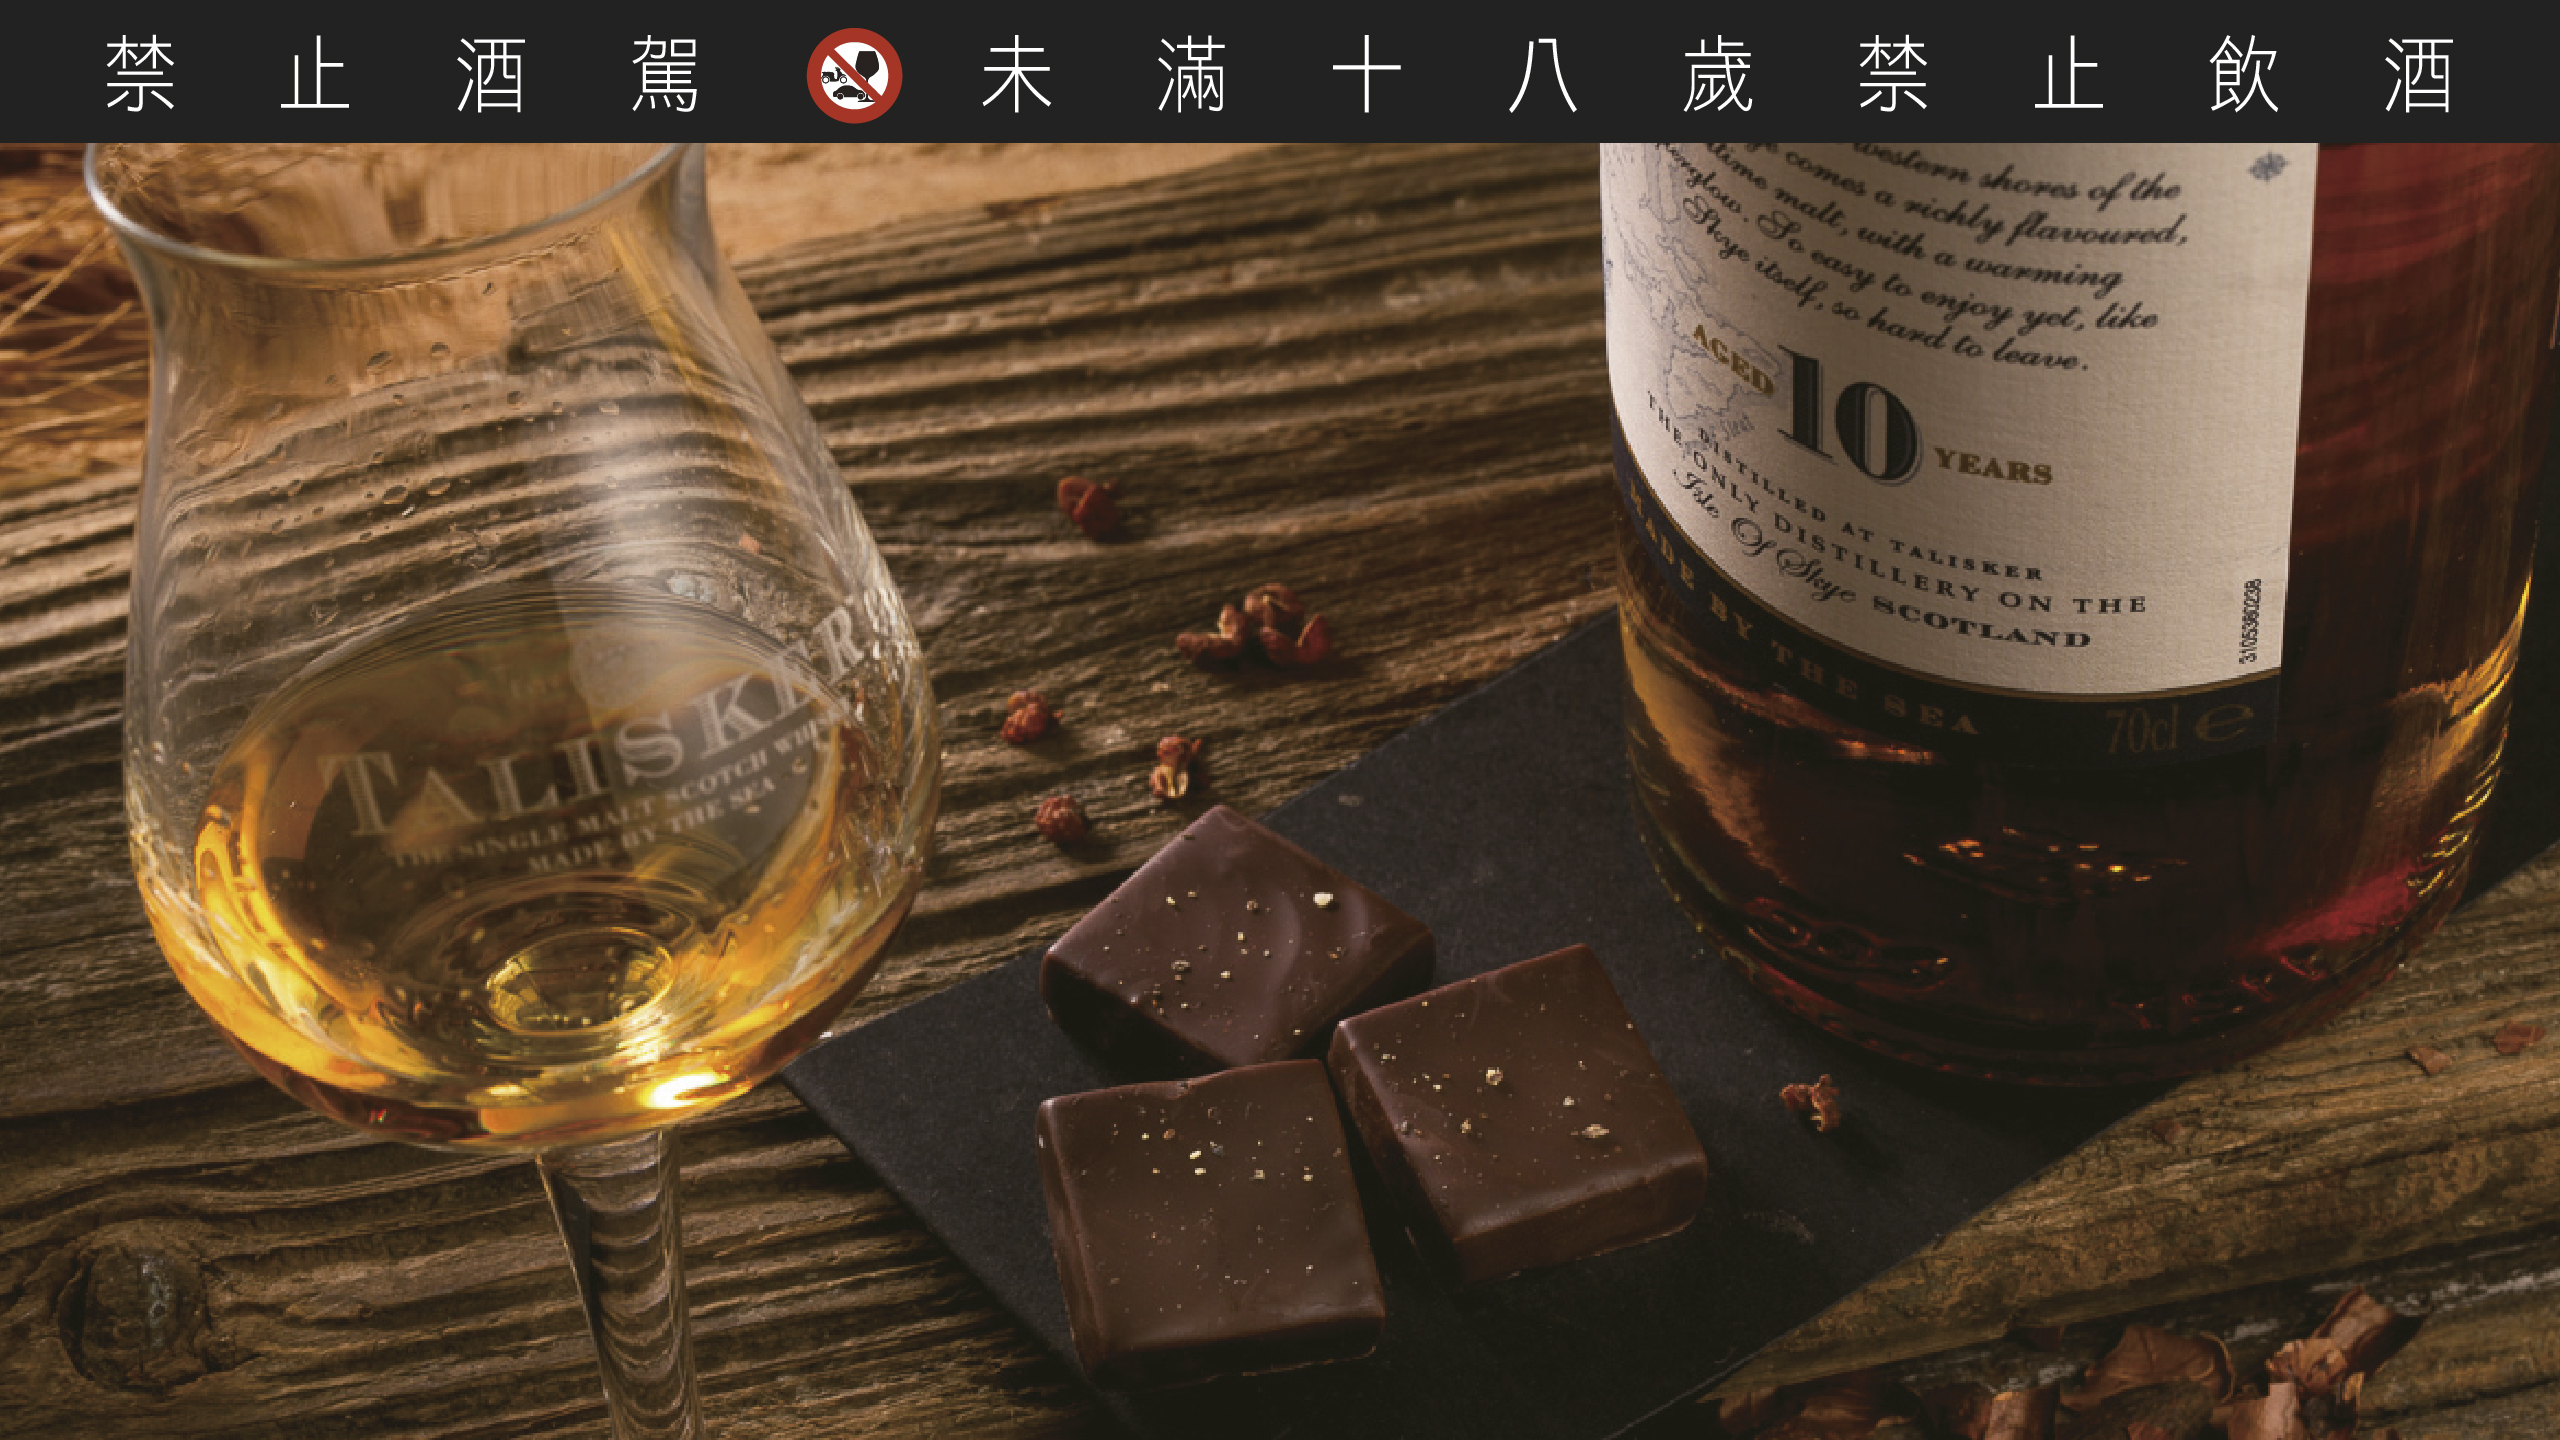 以泰斯卡 Talisker10 年創作「胡椒威士忌」巧克力曾獲世界巧克力大賽亞太區銀牌。